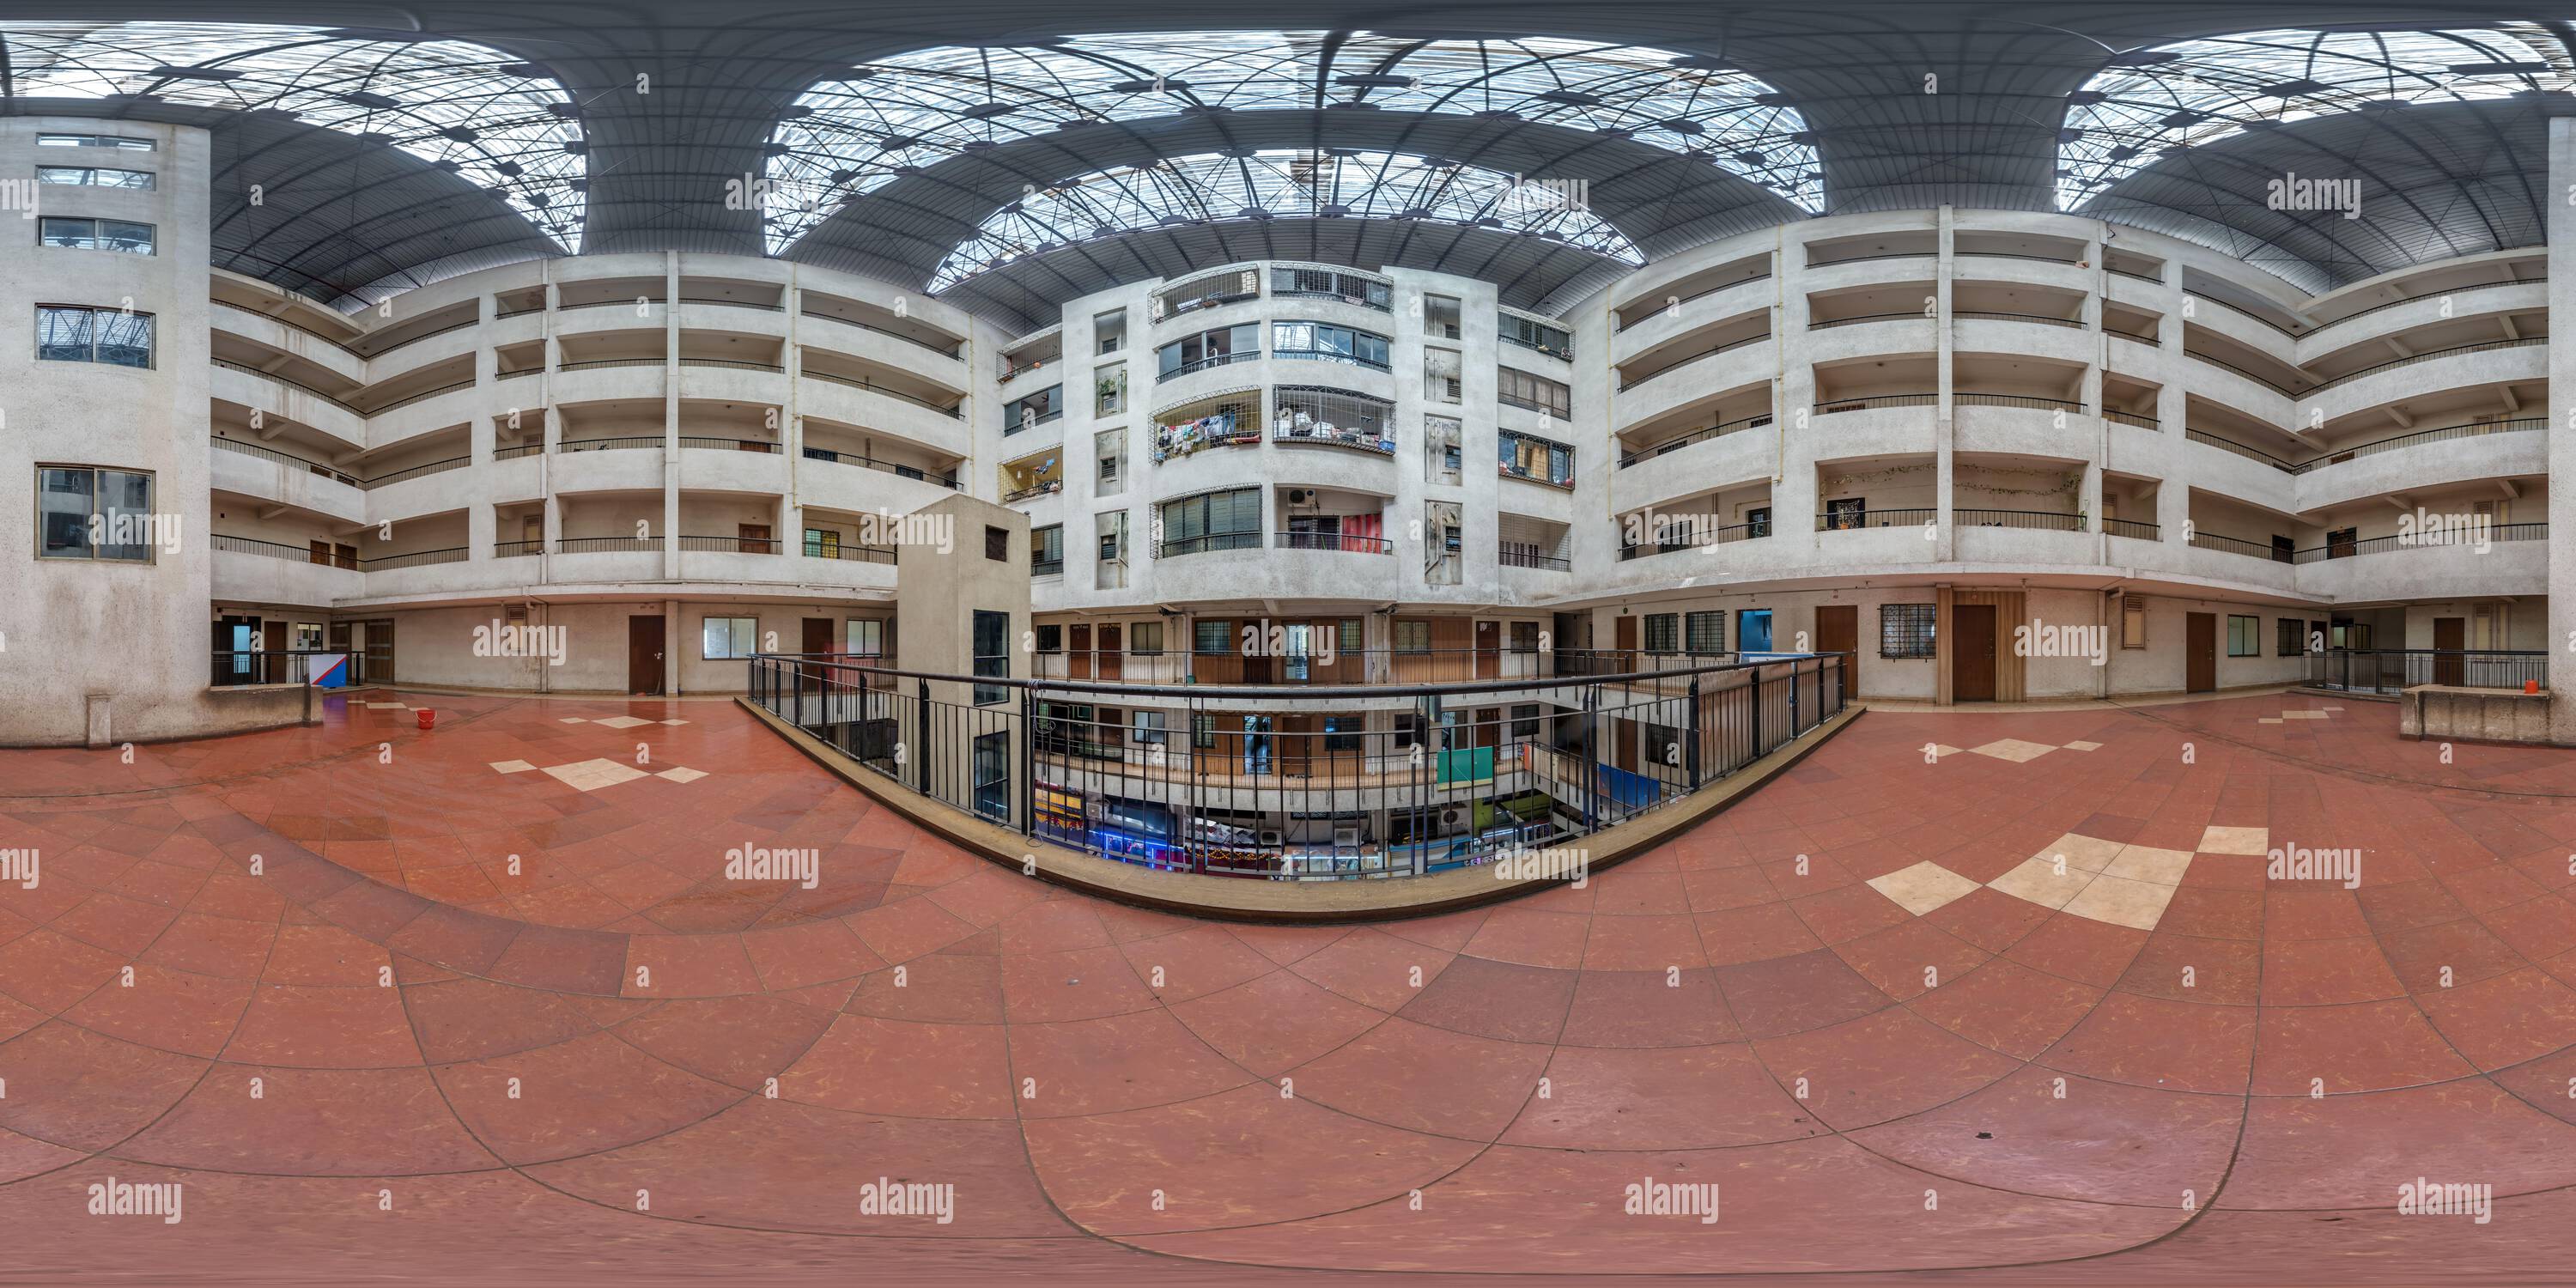 Vue panoramique à 360° de hdri 360 panorama sur place à l'intérieur du complexe résidentiel avec couloir étroit dans la ville indienne en projection équirectangulaire sphérique sans soudure,